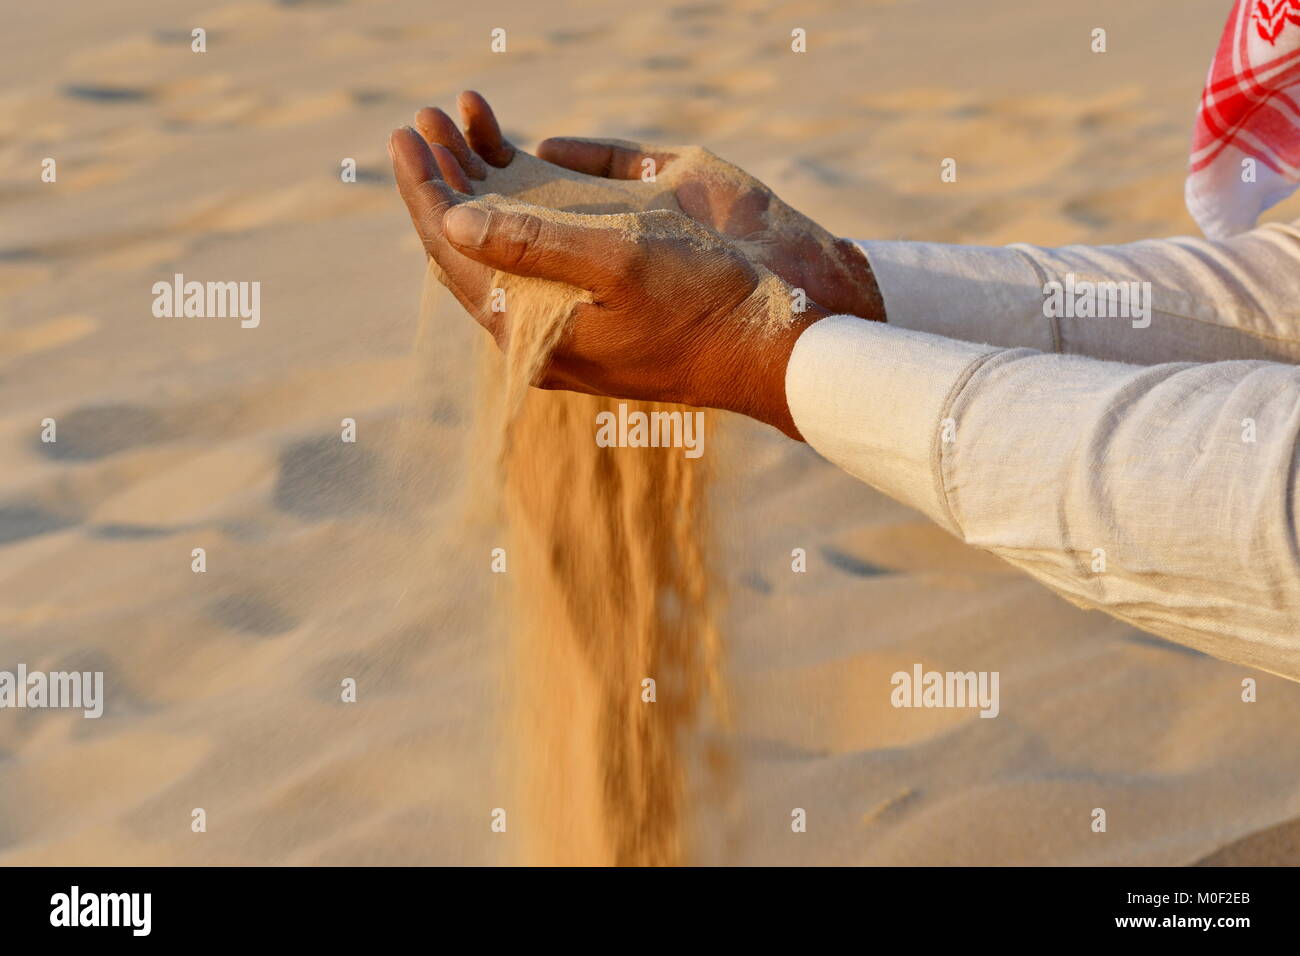 Desert sand in den Händen der indischen Männer der Wüste Besuch in Saudi-arabien als Reiseziel Stockfoto